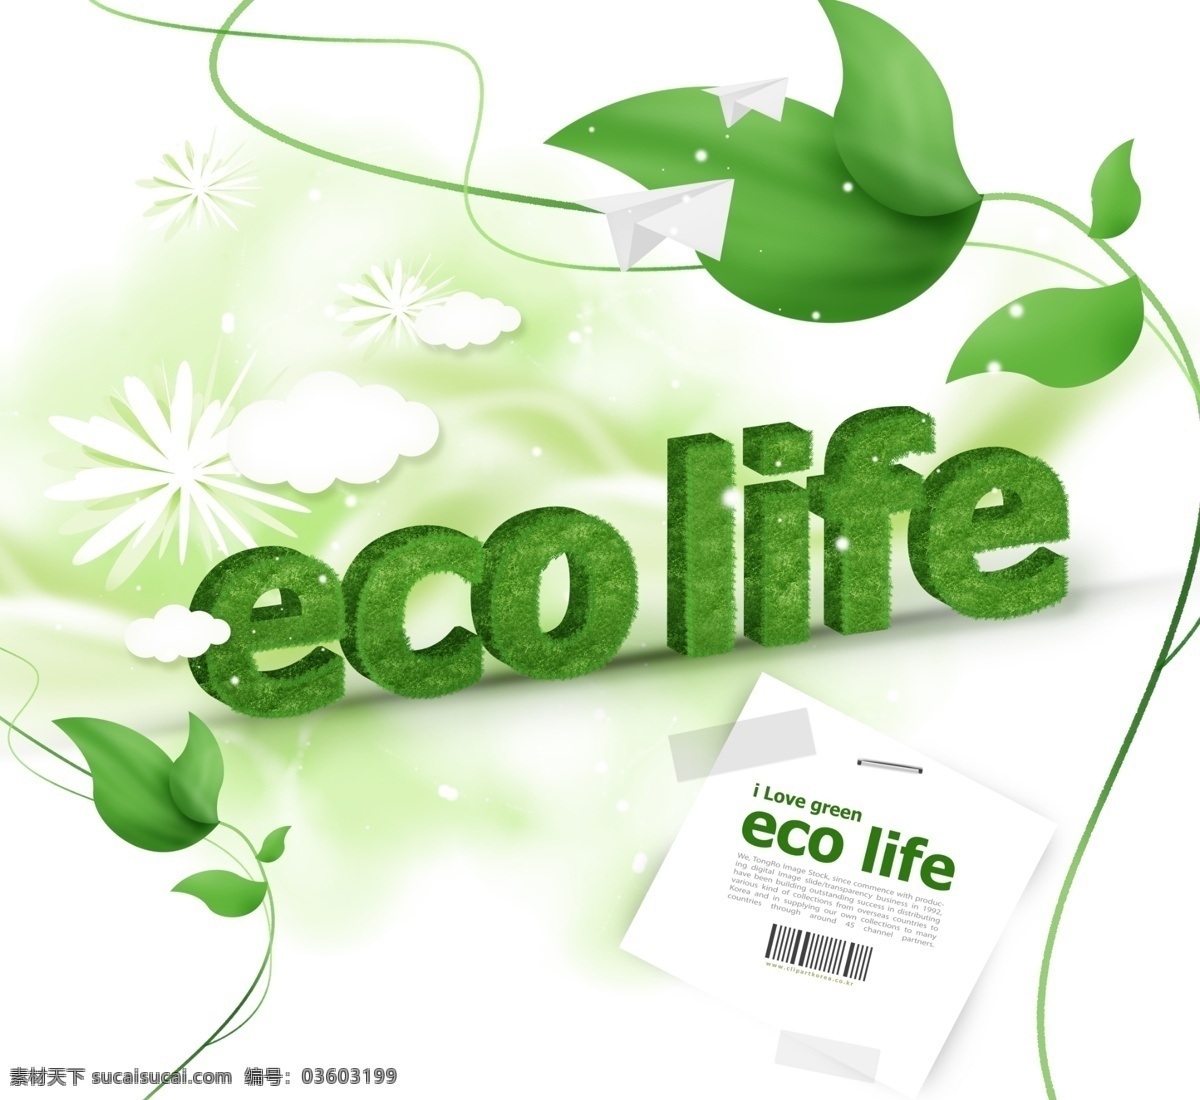 绿叶 纸 飞机 绿色环保 环境保护 环保 节能 绿色能源 生态保护 生态平衡 绿色字母 叶子 纸飞机 广告设计模板 psd素材 白色